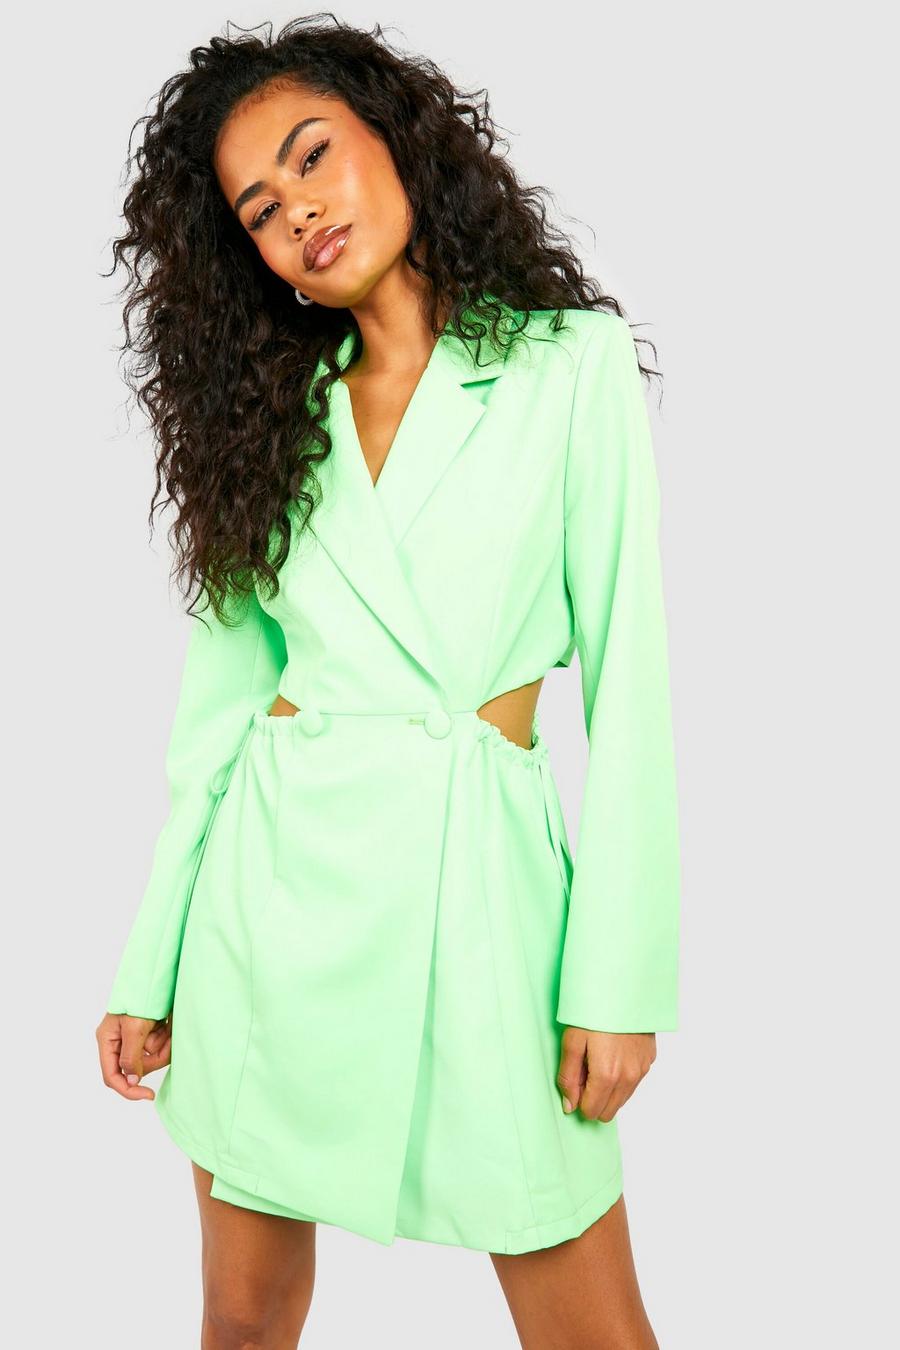 Neon-green Lardini Jackets for Women